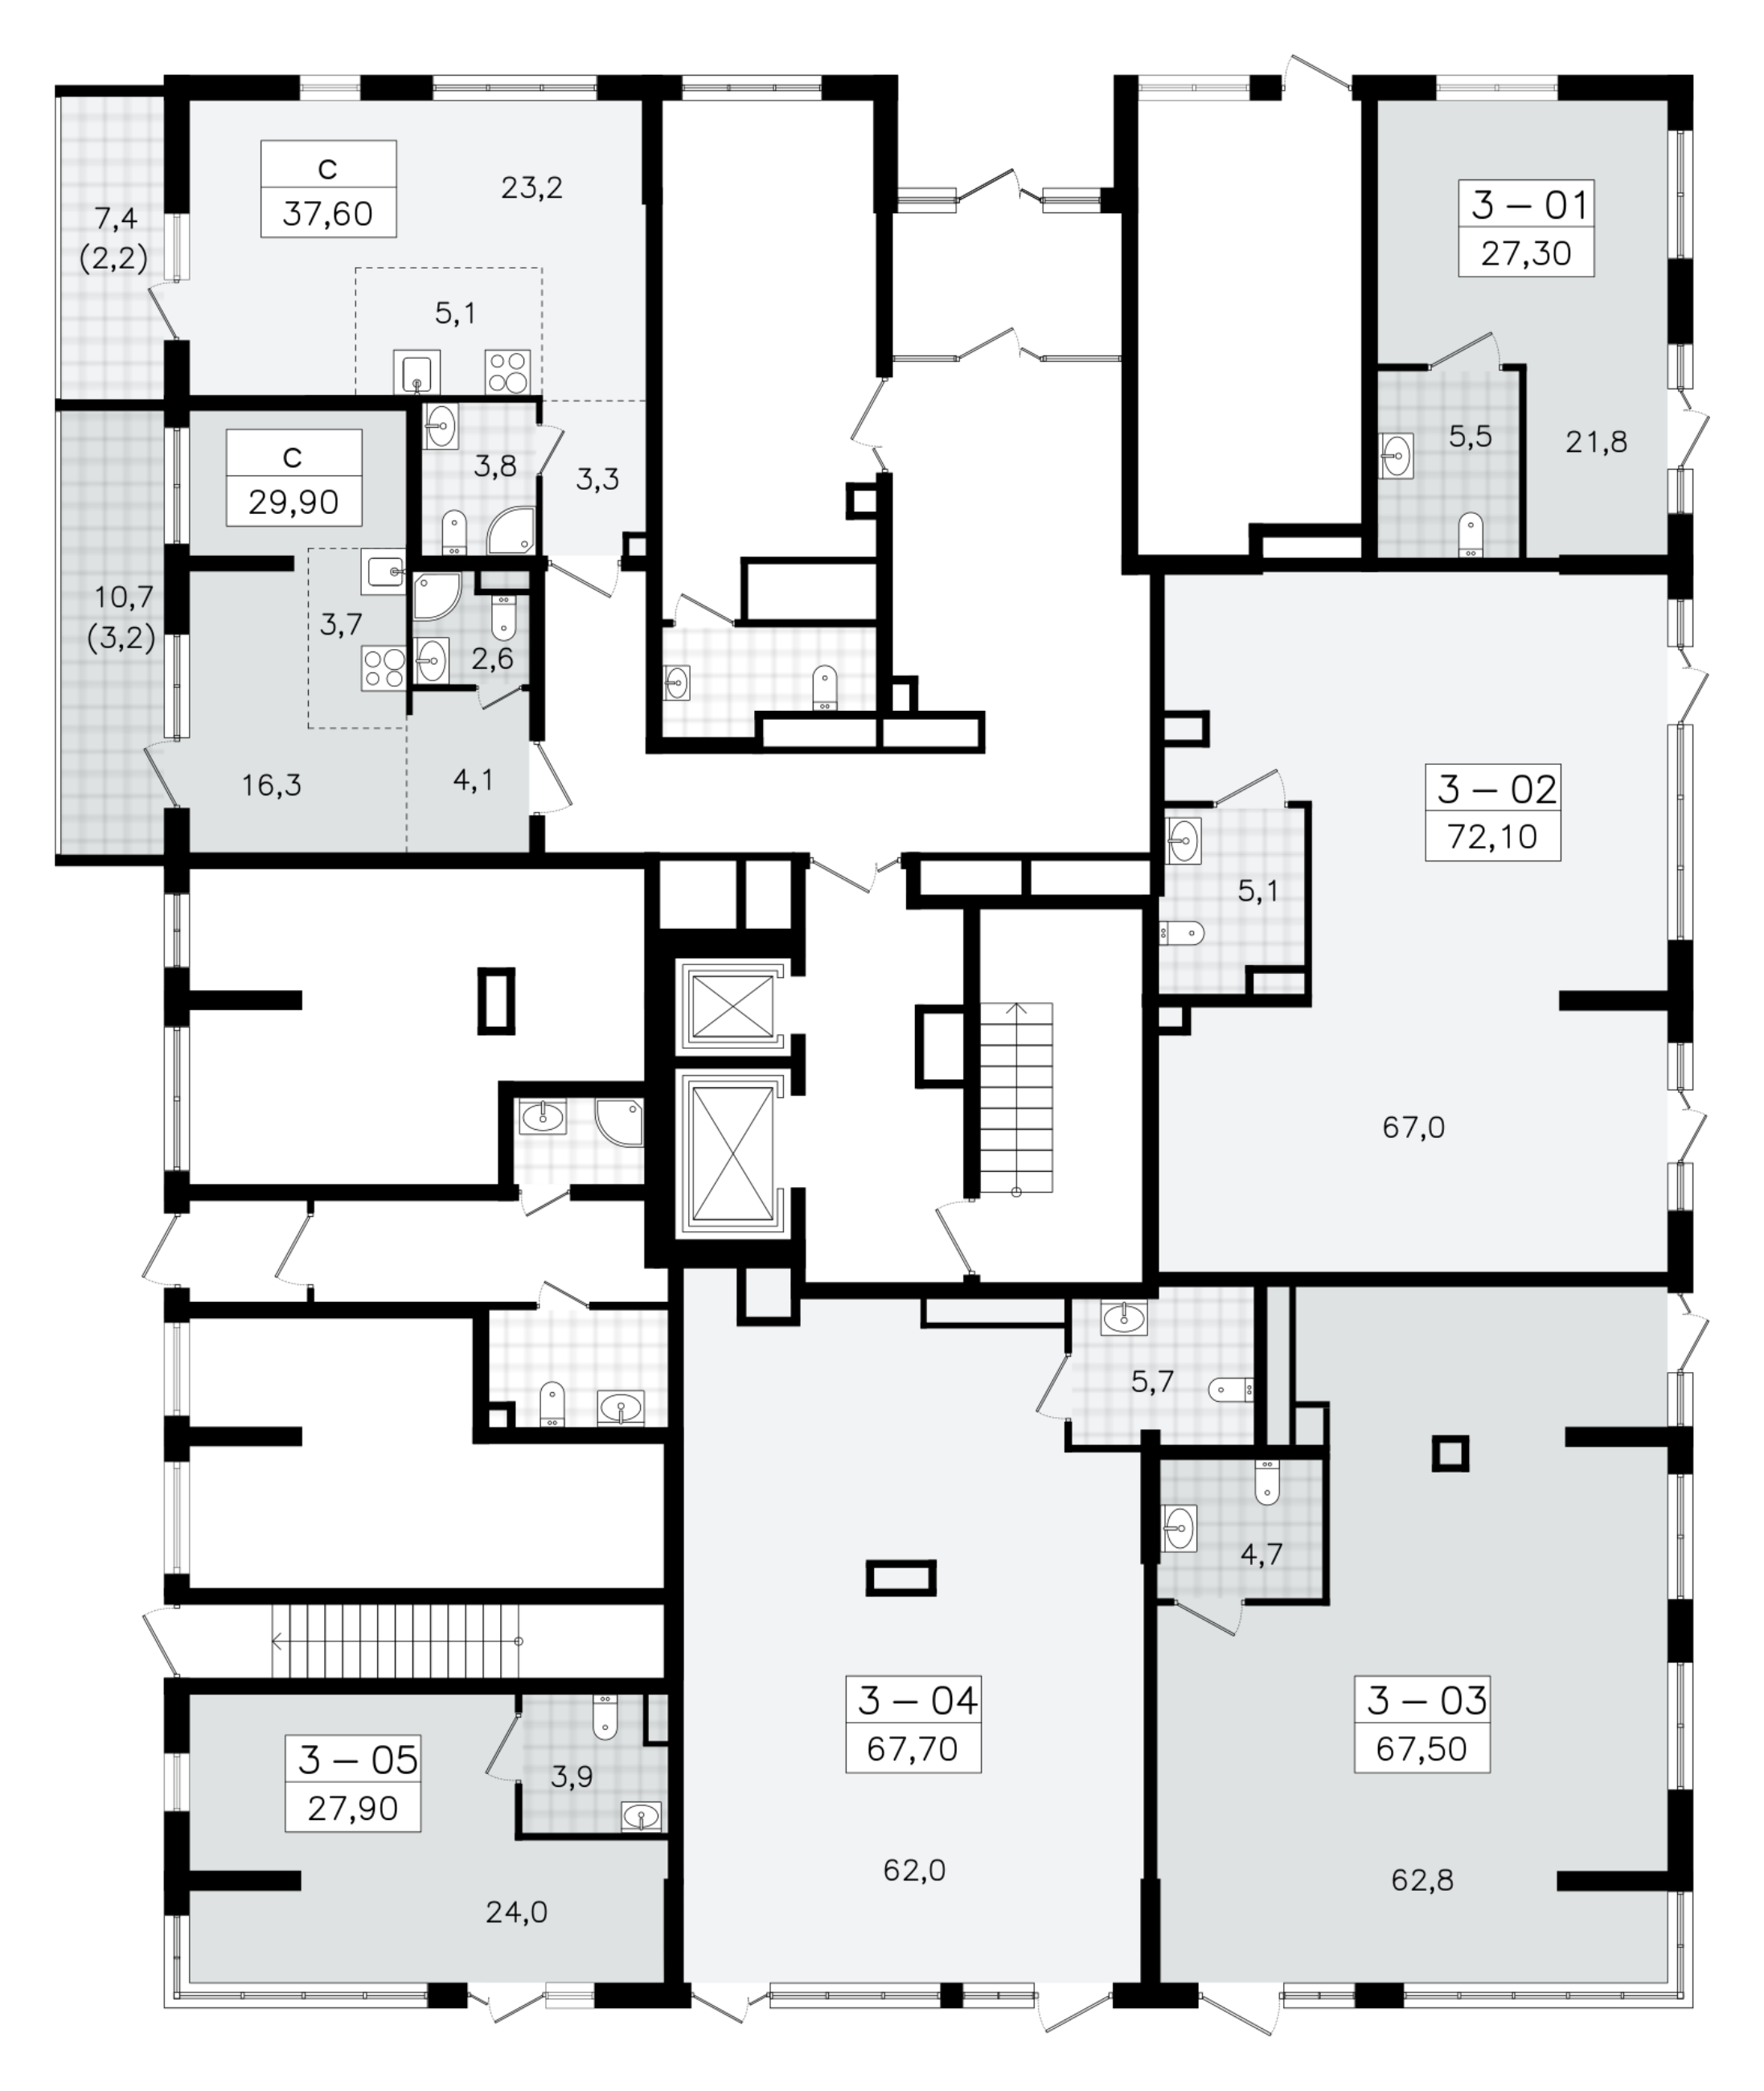 Помещение, 27.9 м² - планировка этажа